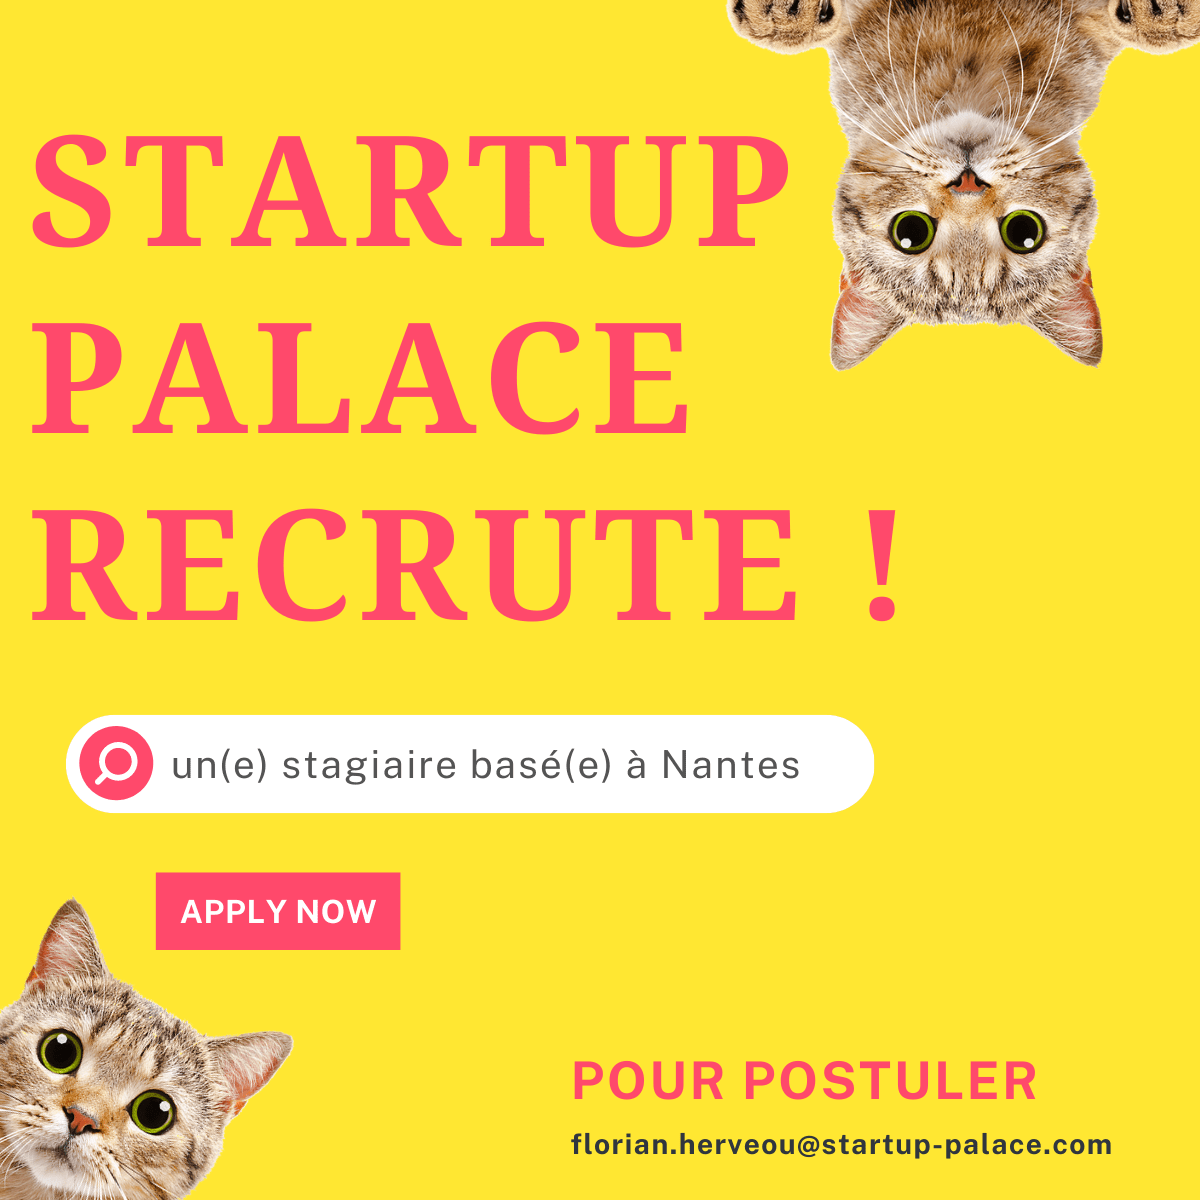 Startup palace recrute !